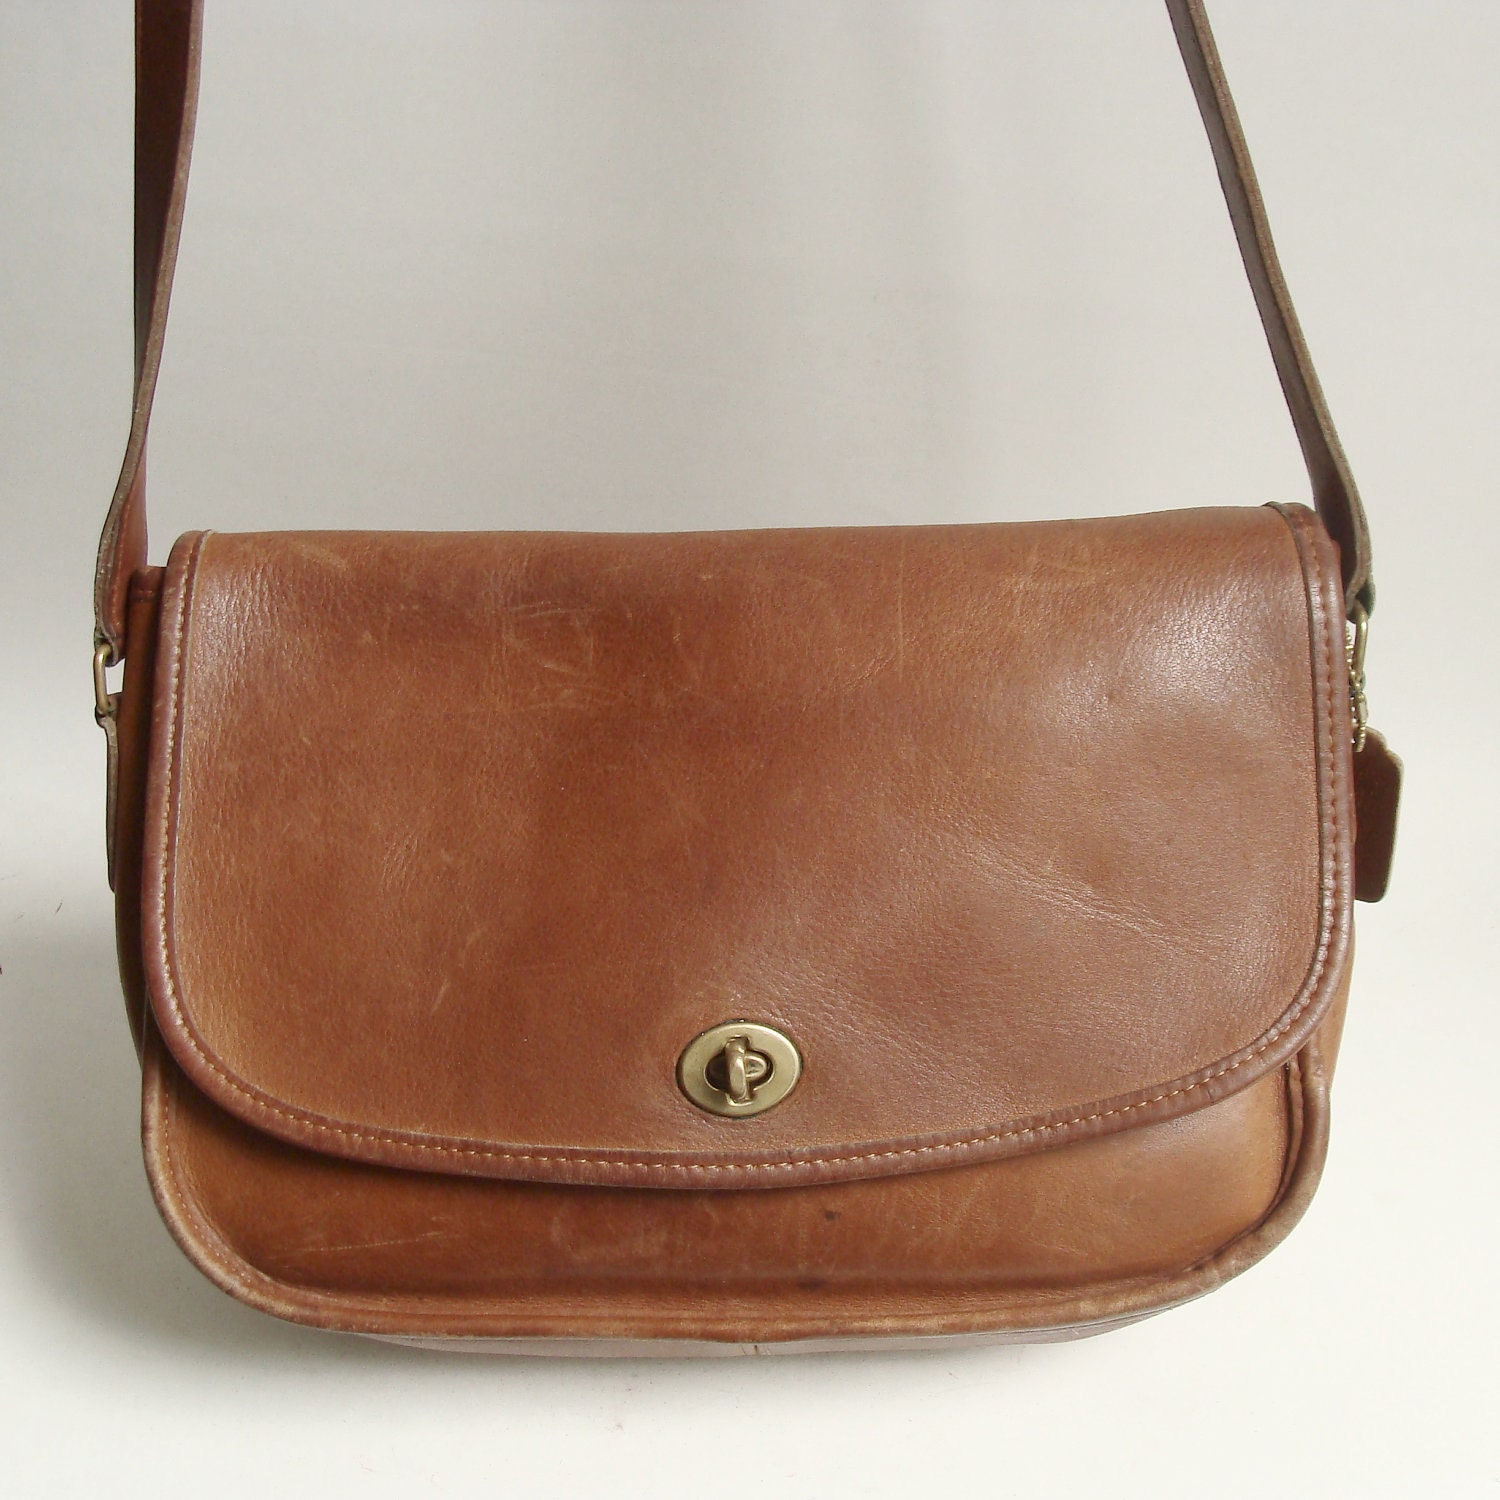 Coach bag / brown leather Coach bag / leather Coach purse